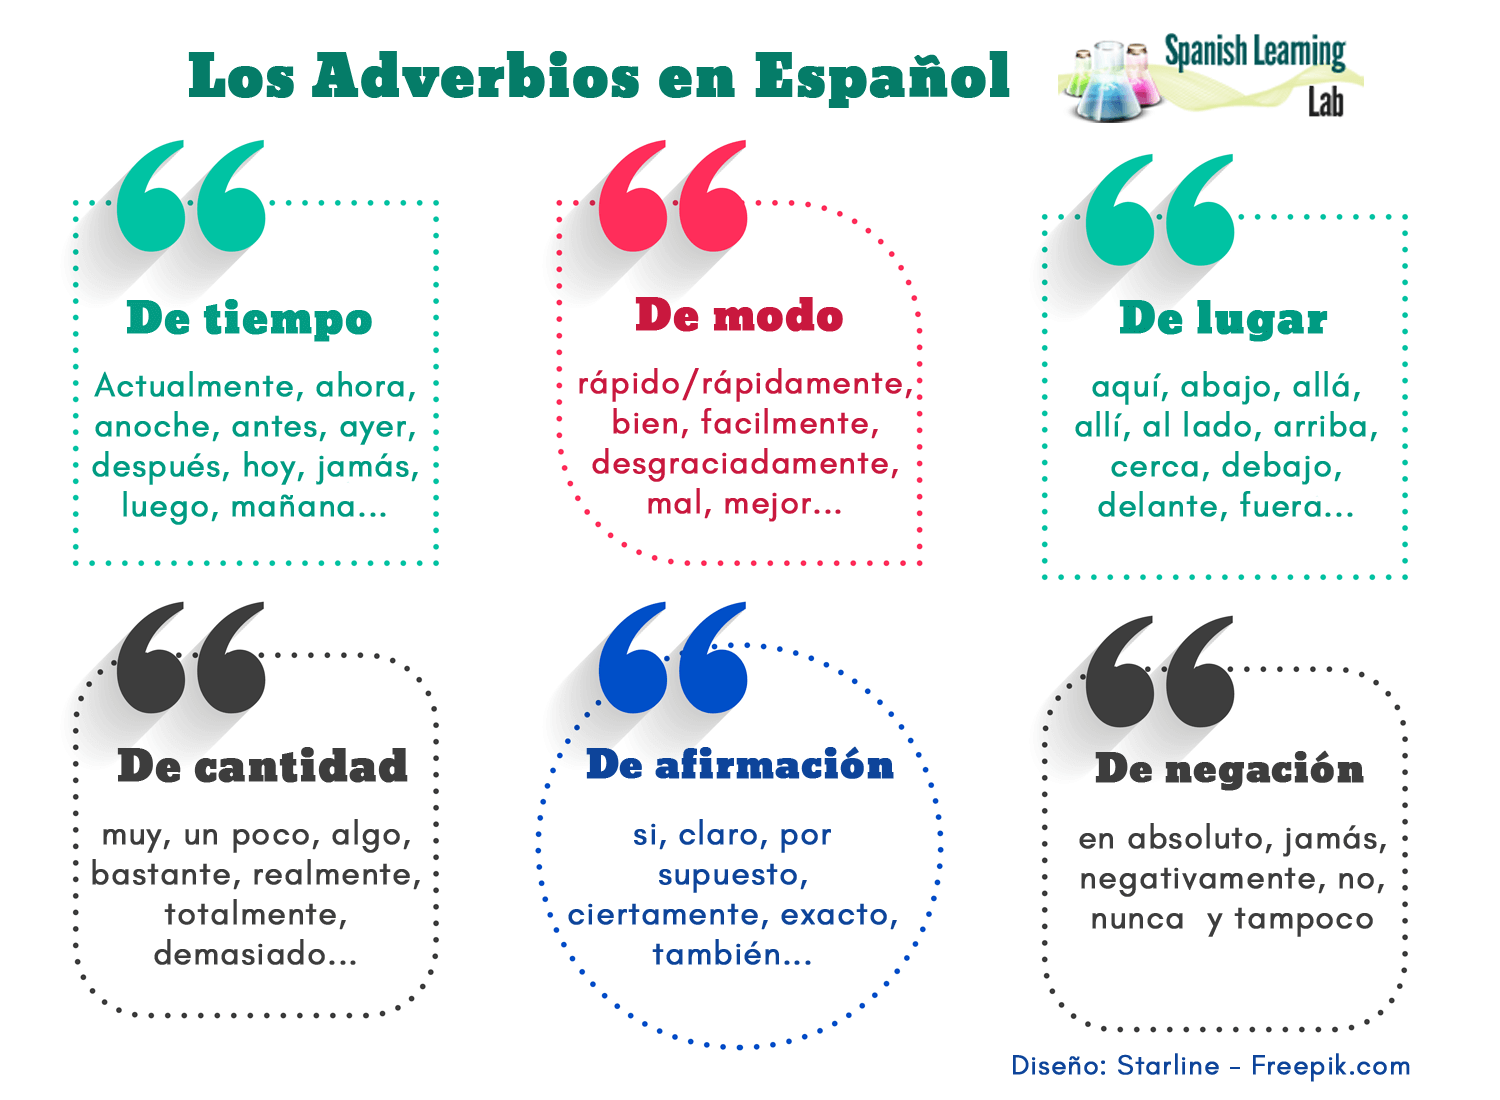 Los Tipos de Adverbios en Español Oraciones y Práctica